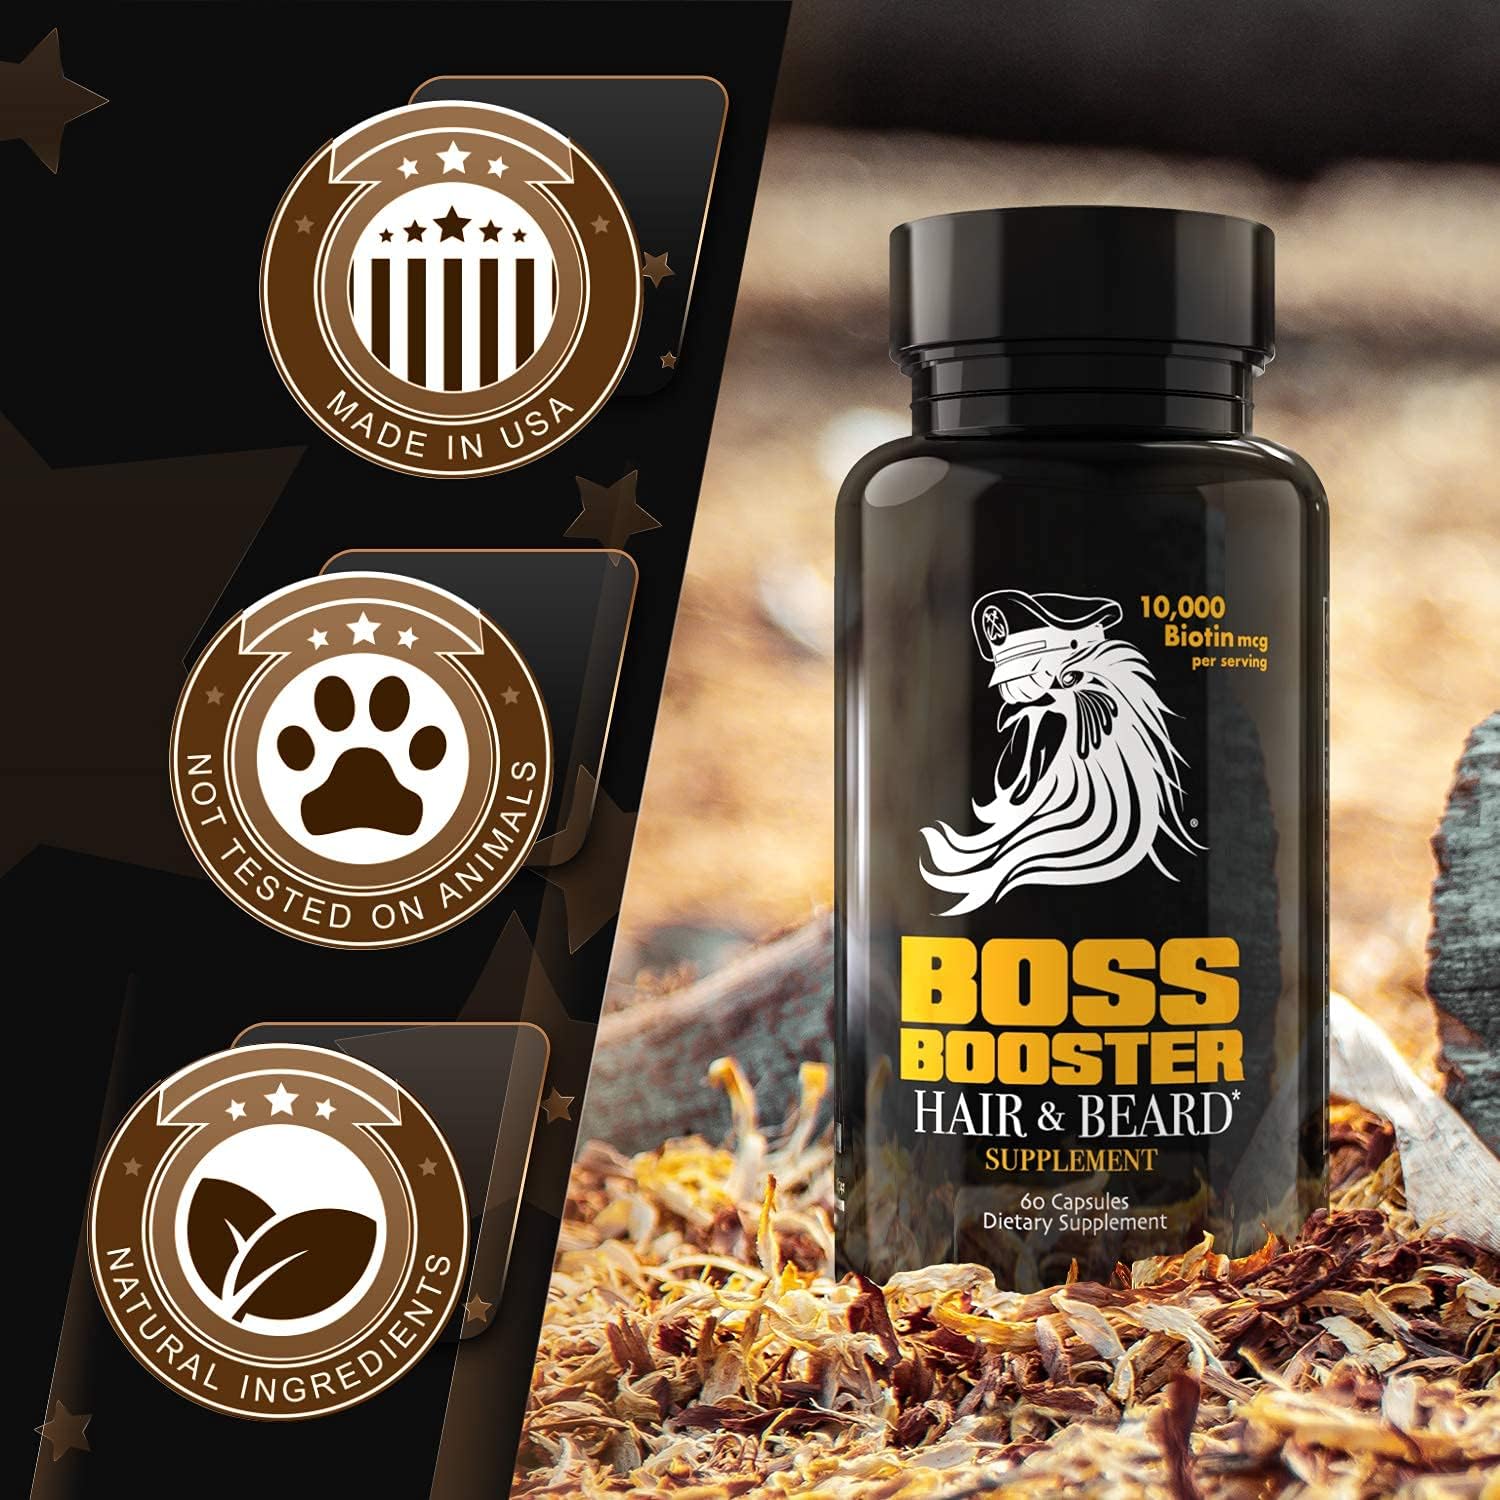 Bossman Boss Booster - Beard Growth Supplement Products for Men - 10,0